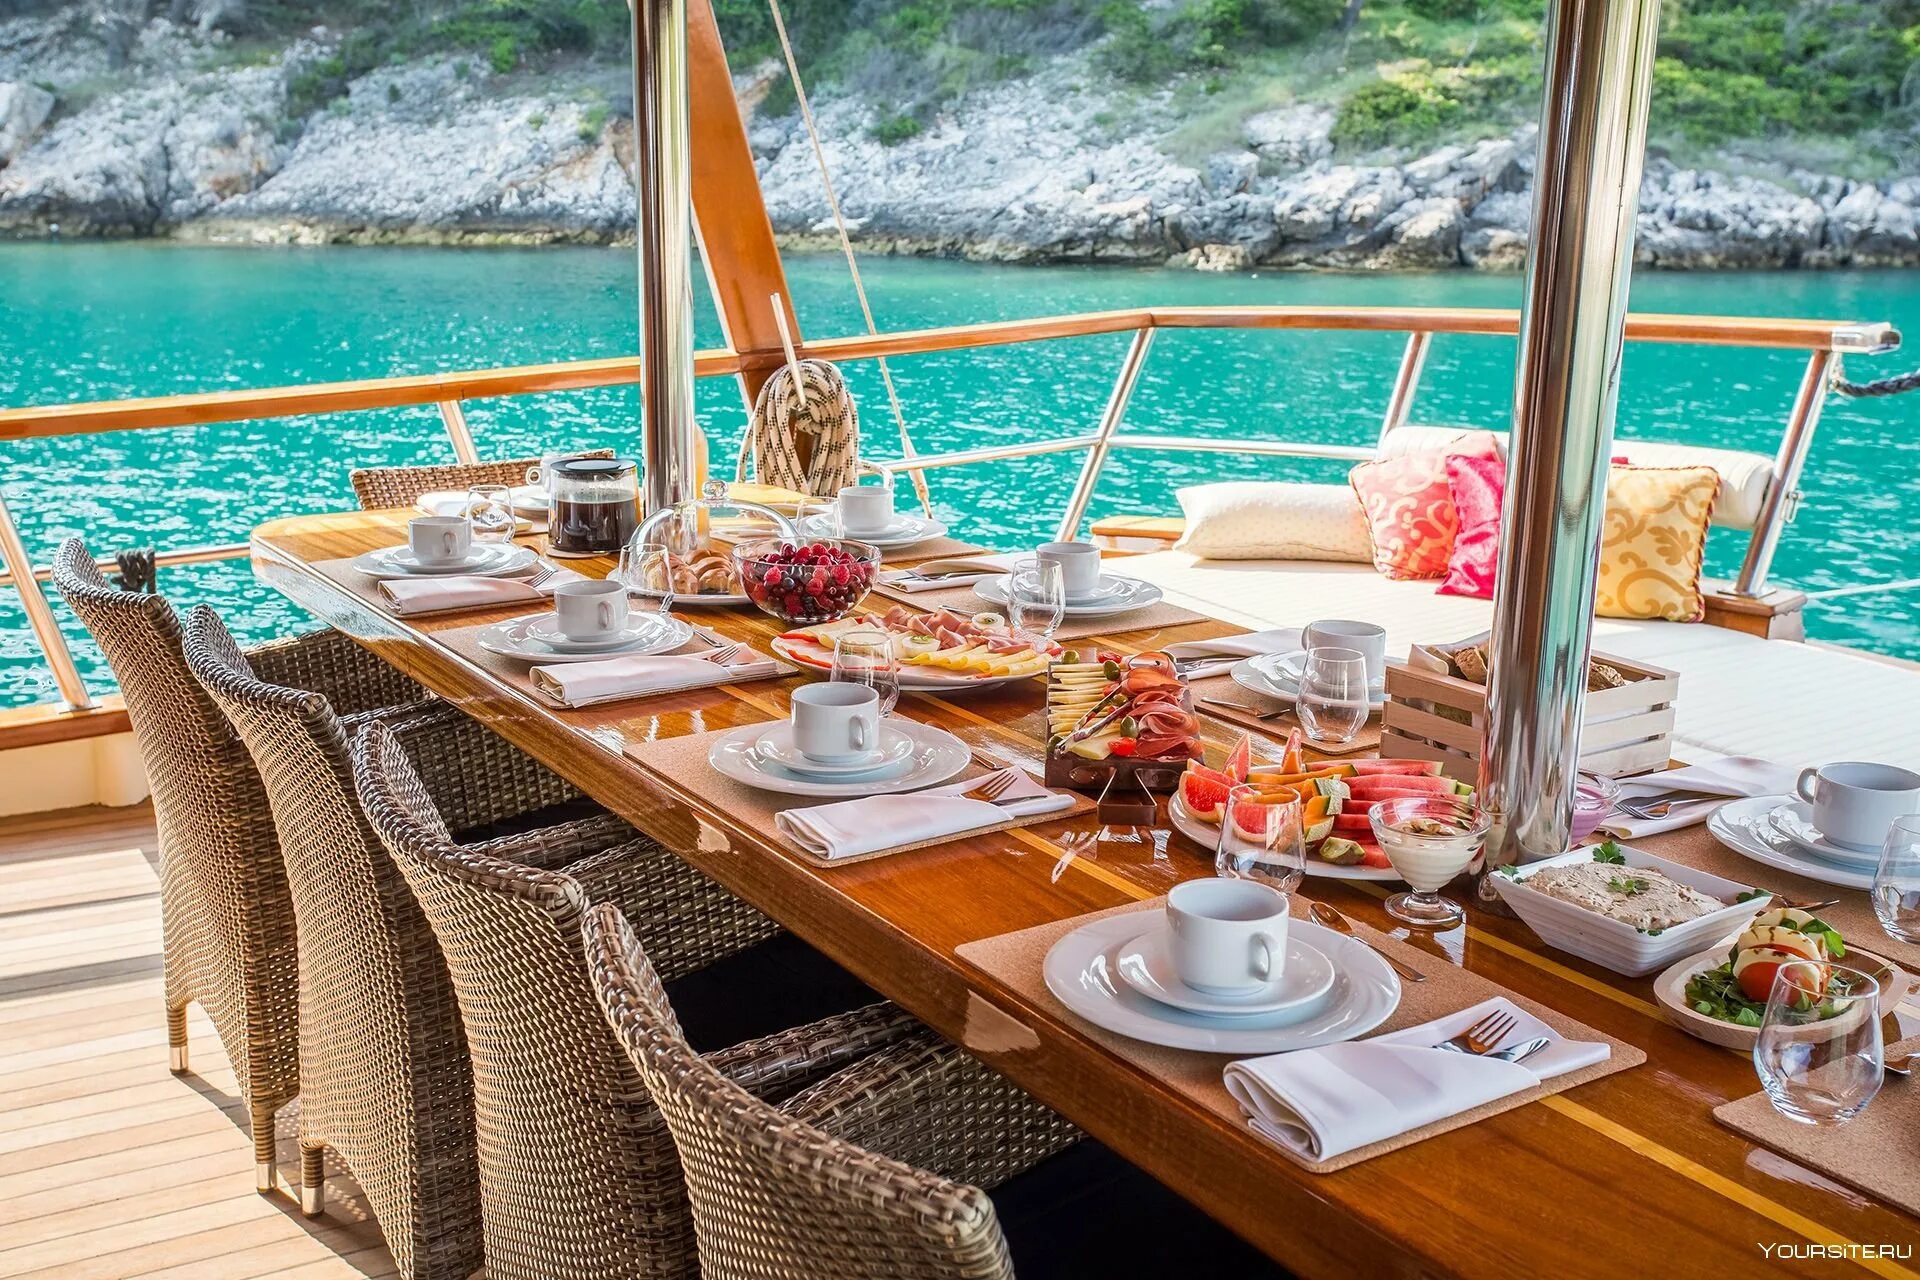 Меню палуба. Роскошный завтрак на яхте. Завтрак у моря. Обед на яхте. Завтрак с видом на море.